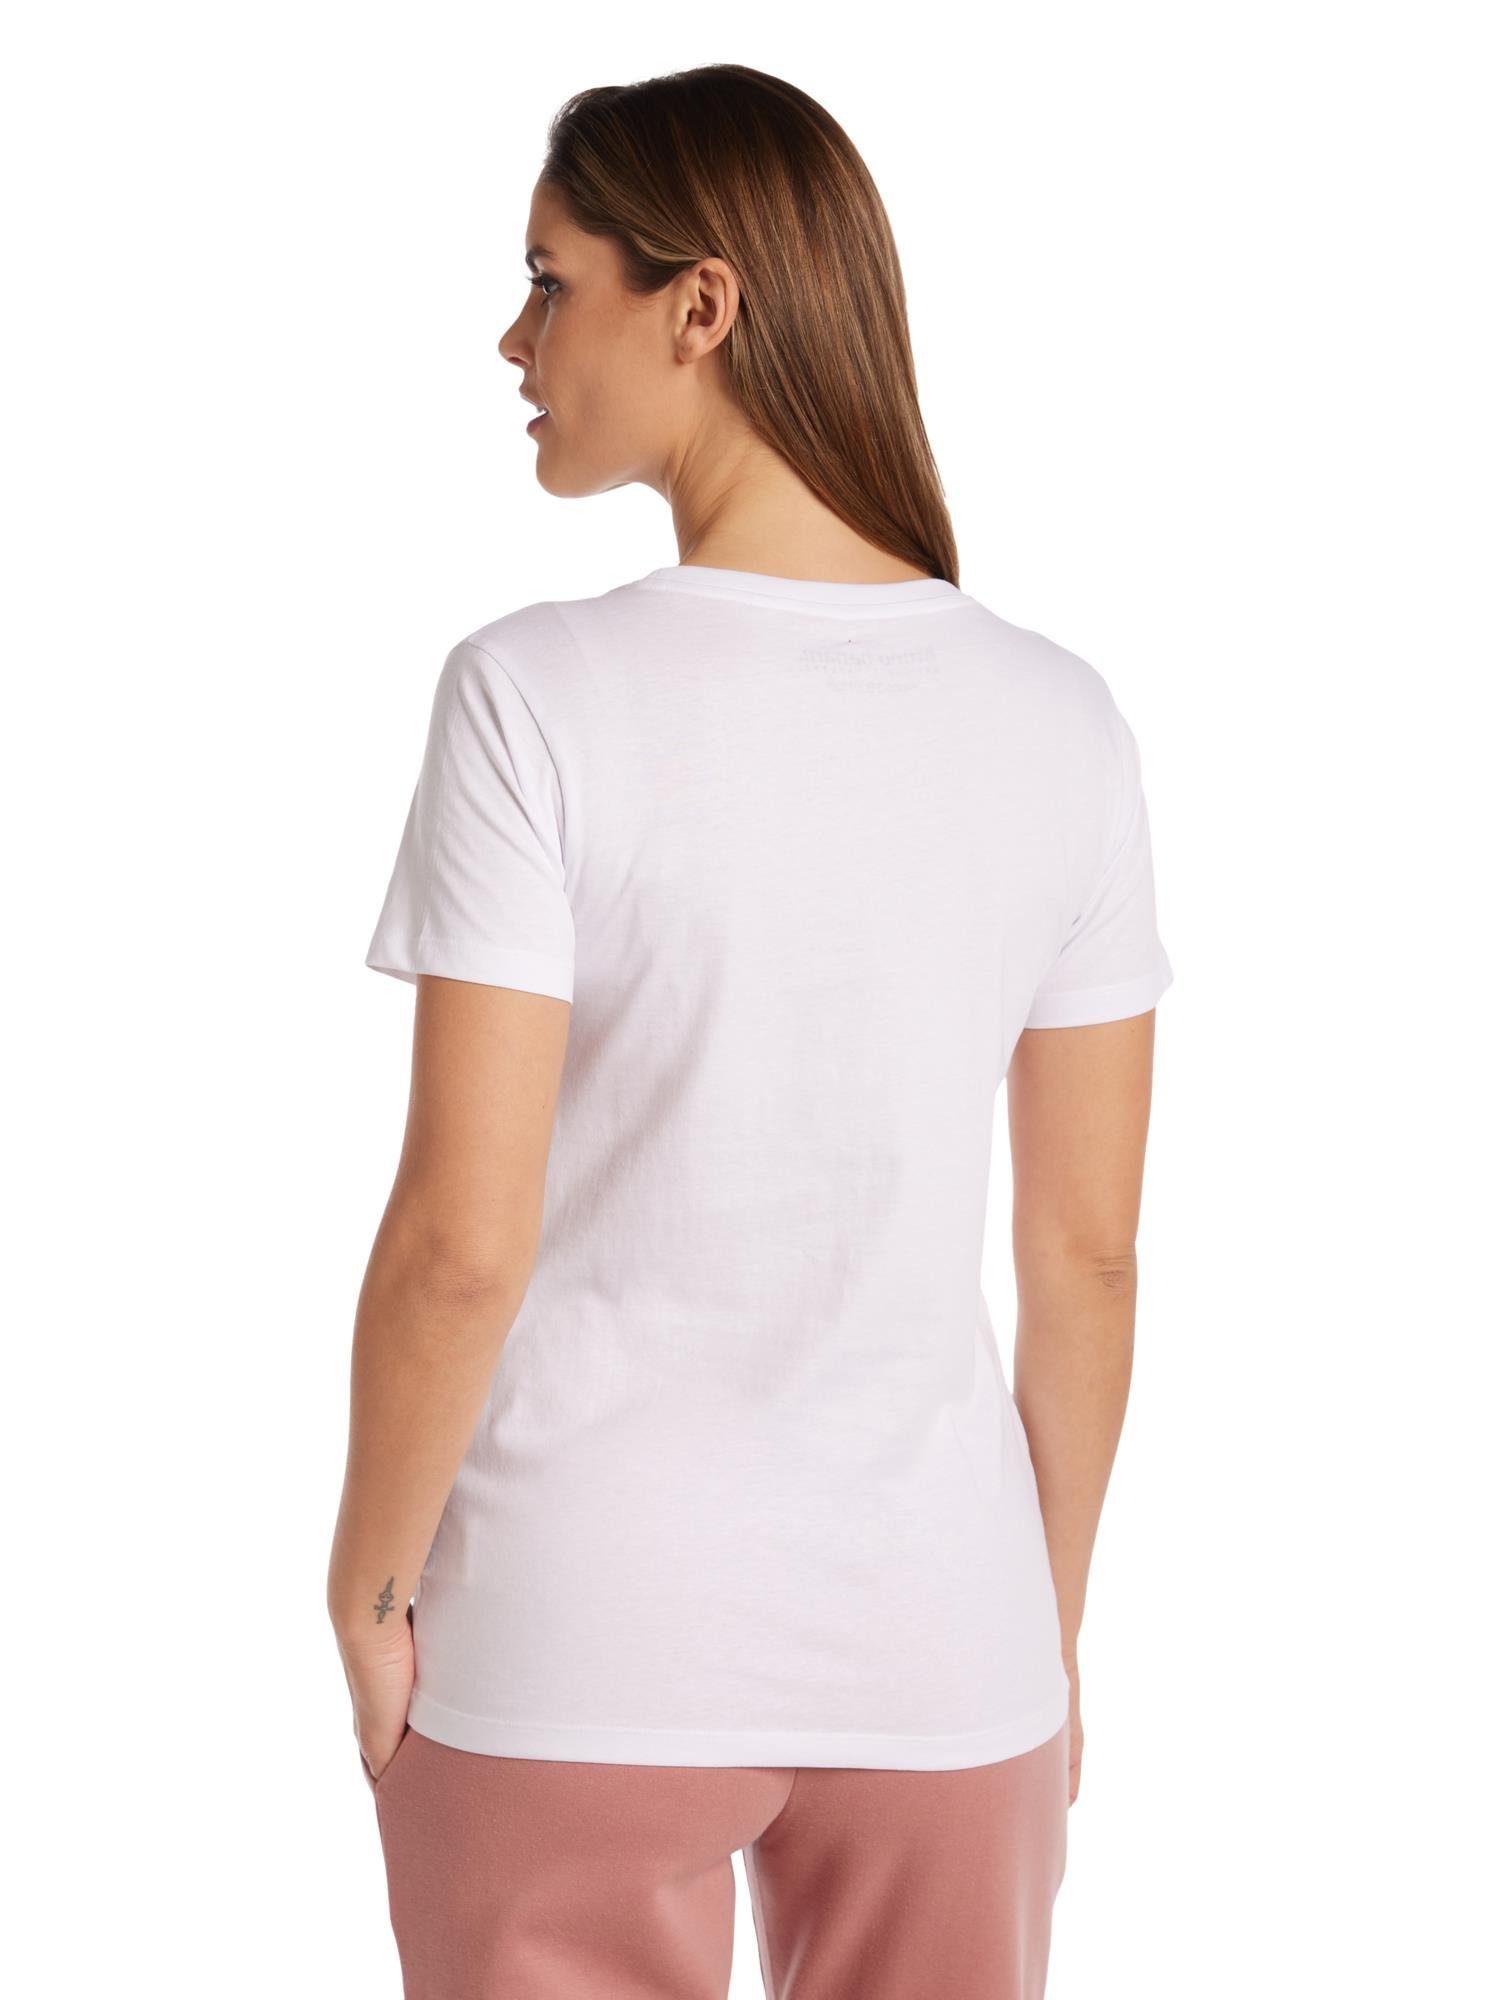 Bruno Avery Banani Weiß T-Shirt